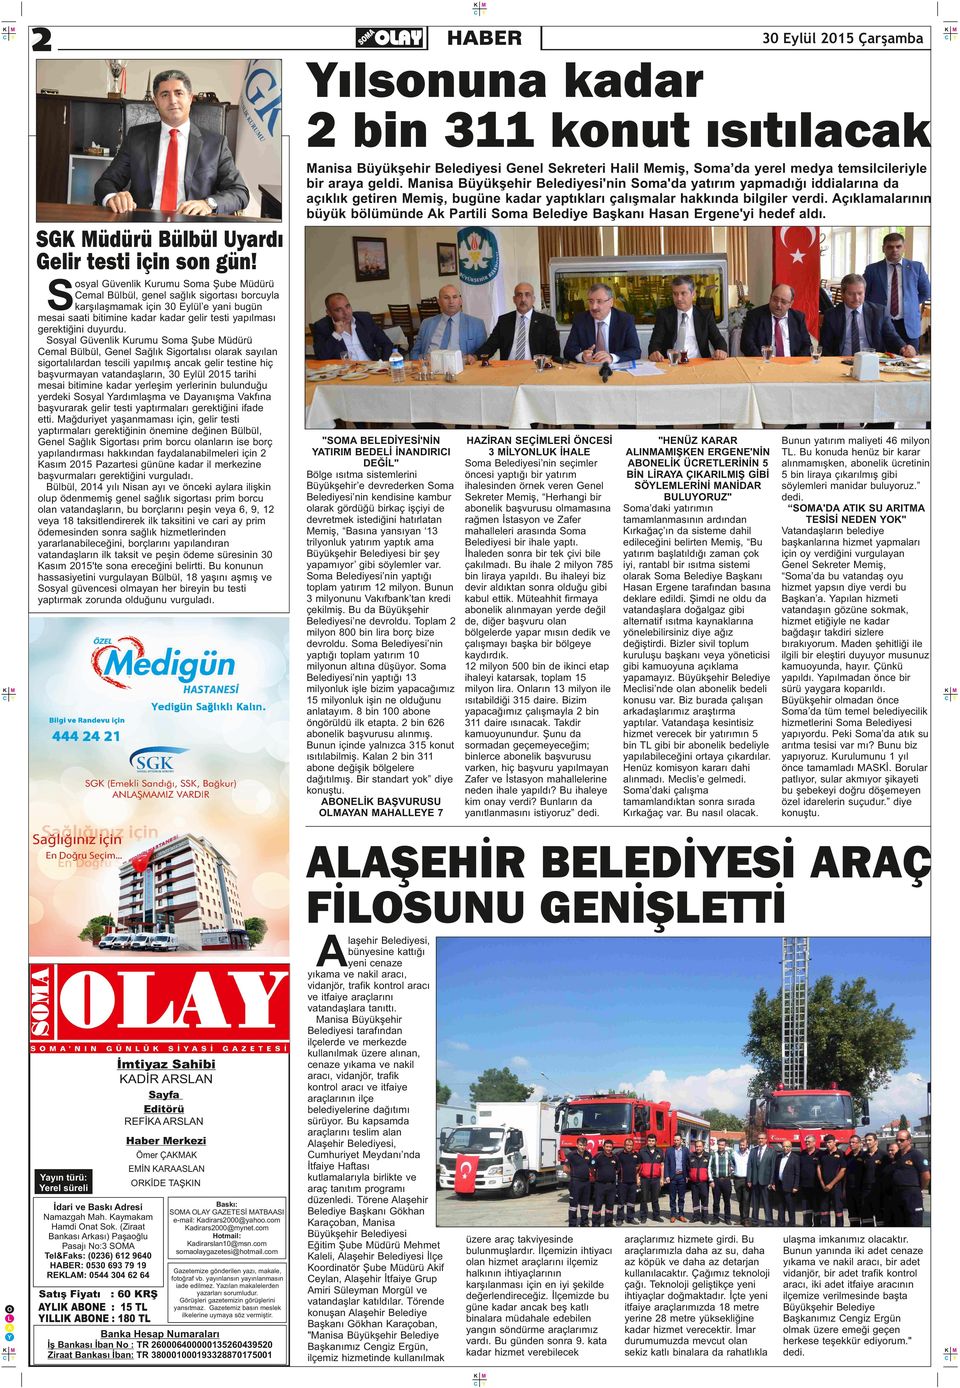 çıklamalarının büyük bölümünde k Partili Soma Belediye Başkanı Hasan Ergene'yi hedef aldı. SGüdürü Bülbül Uyardı Gelir testi için son gün!